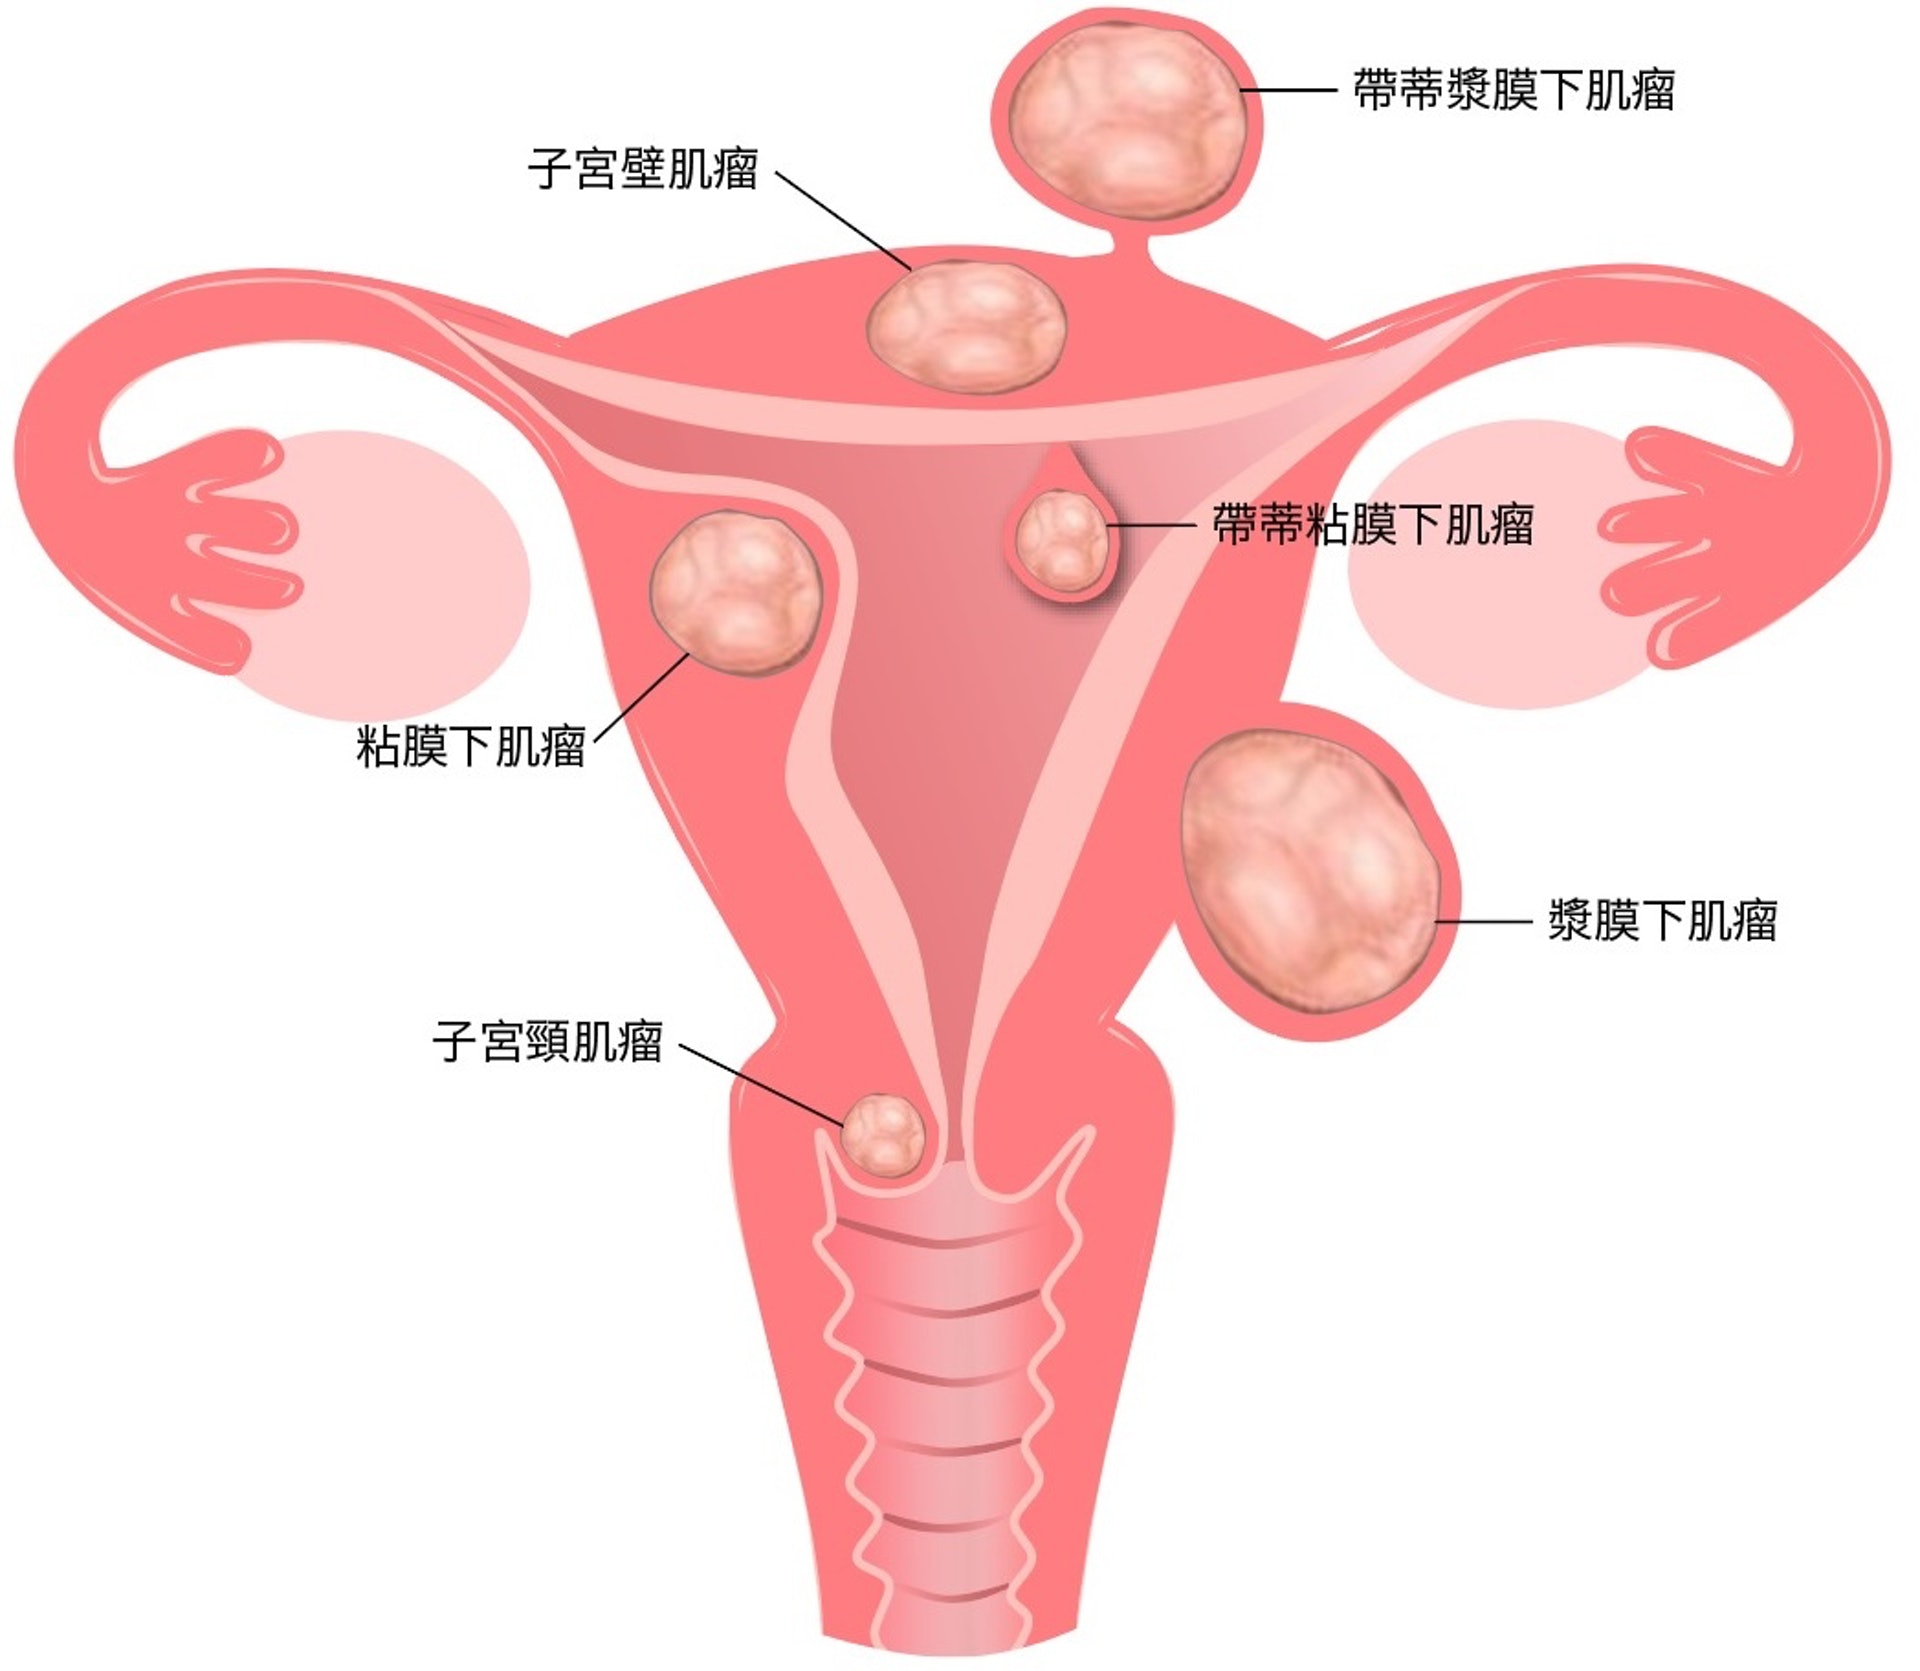 子宮肌瘤或會在子宮不同位置生長。HSG能檢測出位於宮腔或較突入至宮腔的子宮肌瘤。但假如子宮肌瘤剛巧位於其他位置，則無法通過HSG偵測出來。（圖片：hkreproductivehealth）